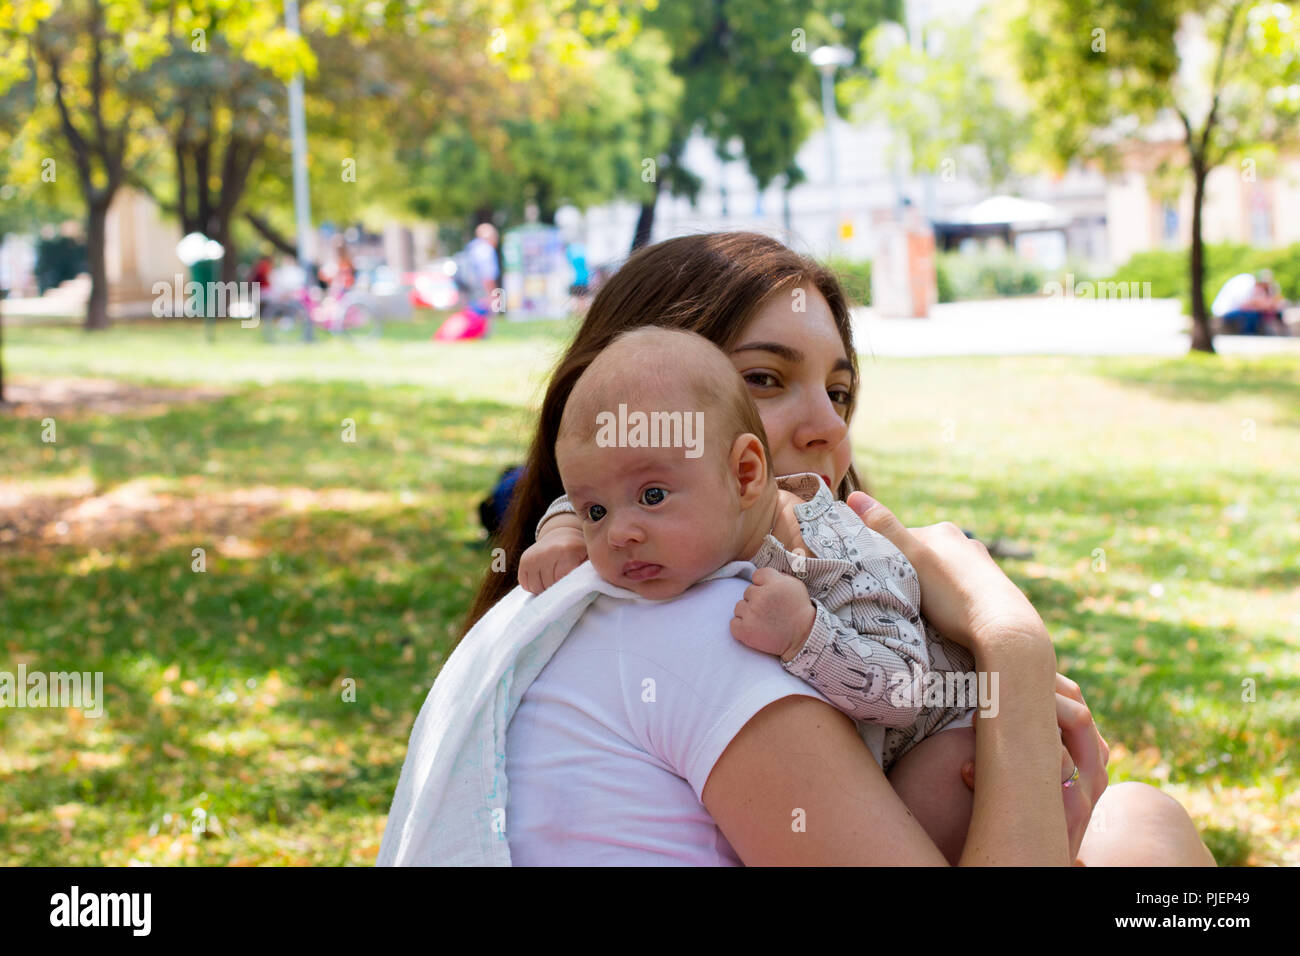 Portrait von schönes Baby ruhender Kopf auf Mutter arm, junge Mutter ist die Pflege ihr Kind in burping Position nach dem Stillen, außerhalb im City Park Stockfoto